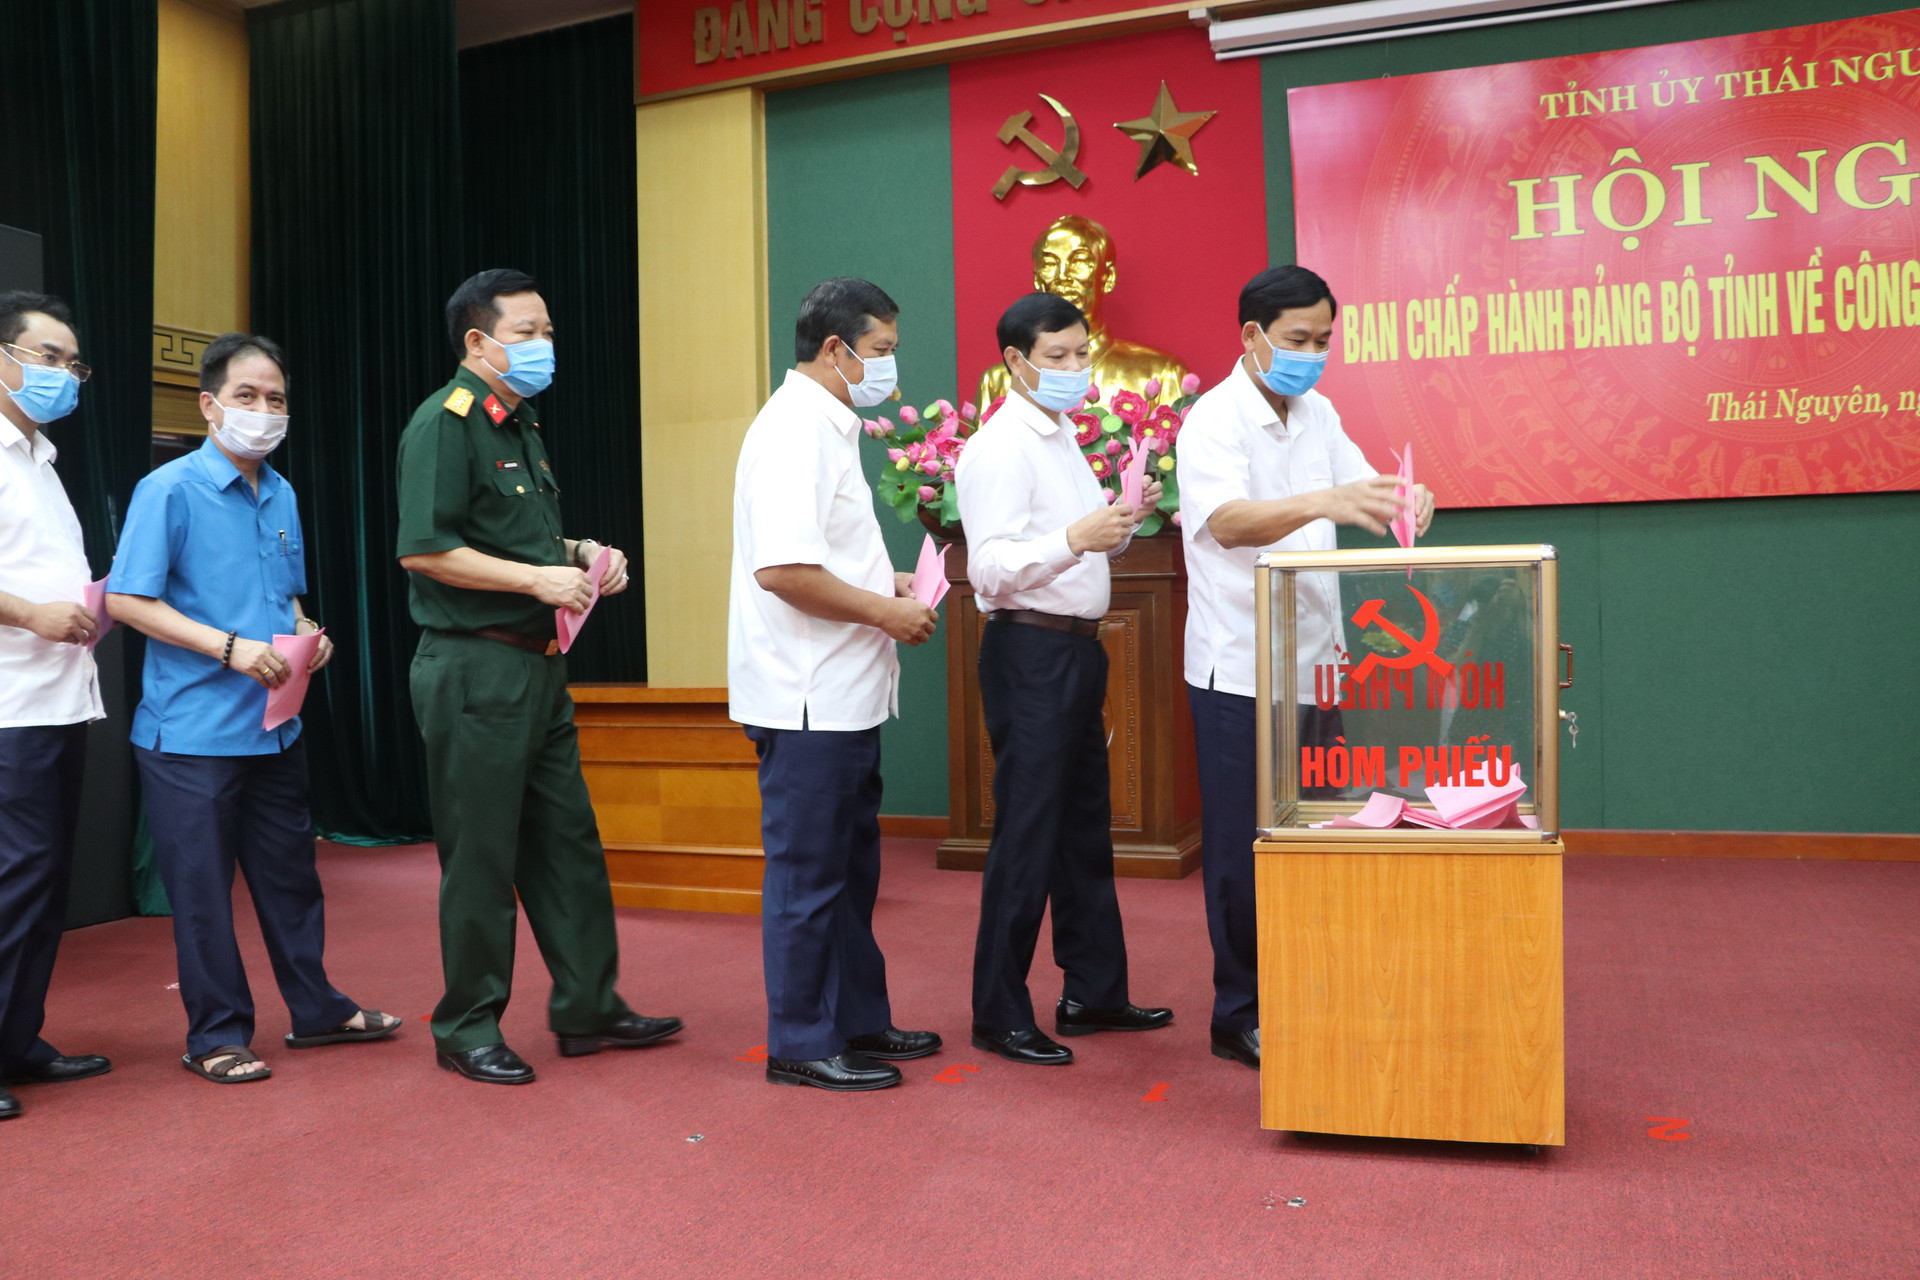 Các đại biểu bỏ phiếu bầu Phó Bí thư Tỉnh ủy Thái Nguyên nhiệm kỳ 2015-2020.